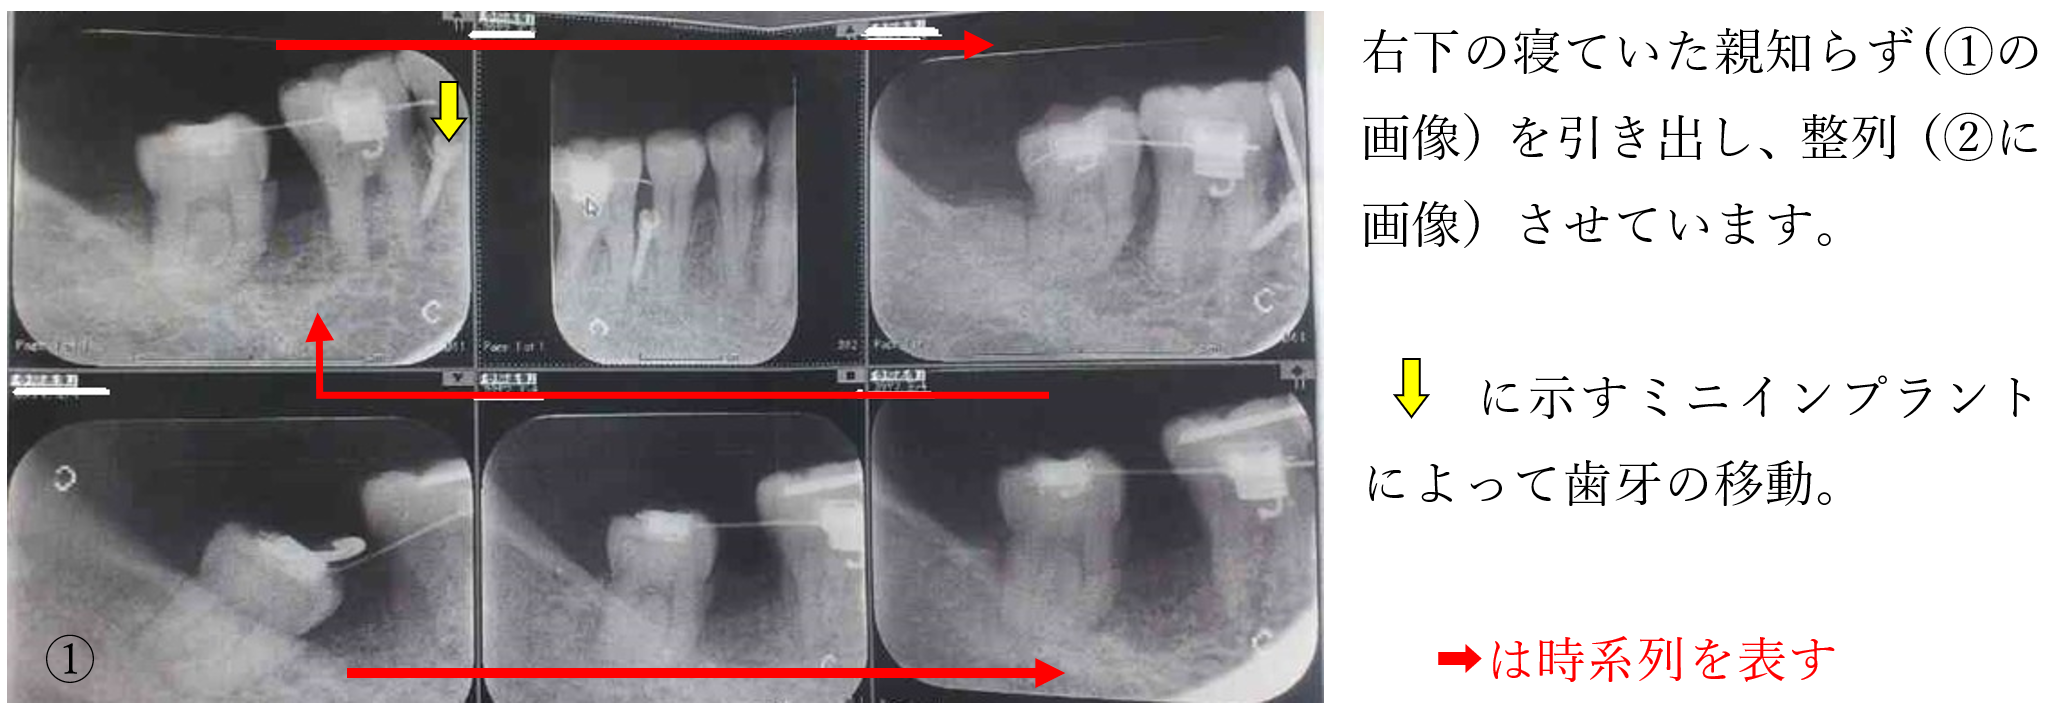 歯周病治療におけるミニインプラントと矯正治療による智歯（親知らず）の有効利用症例